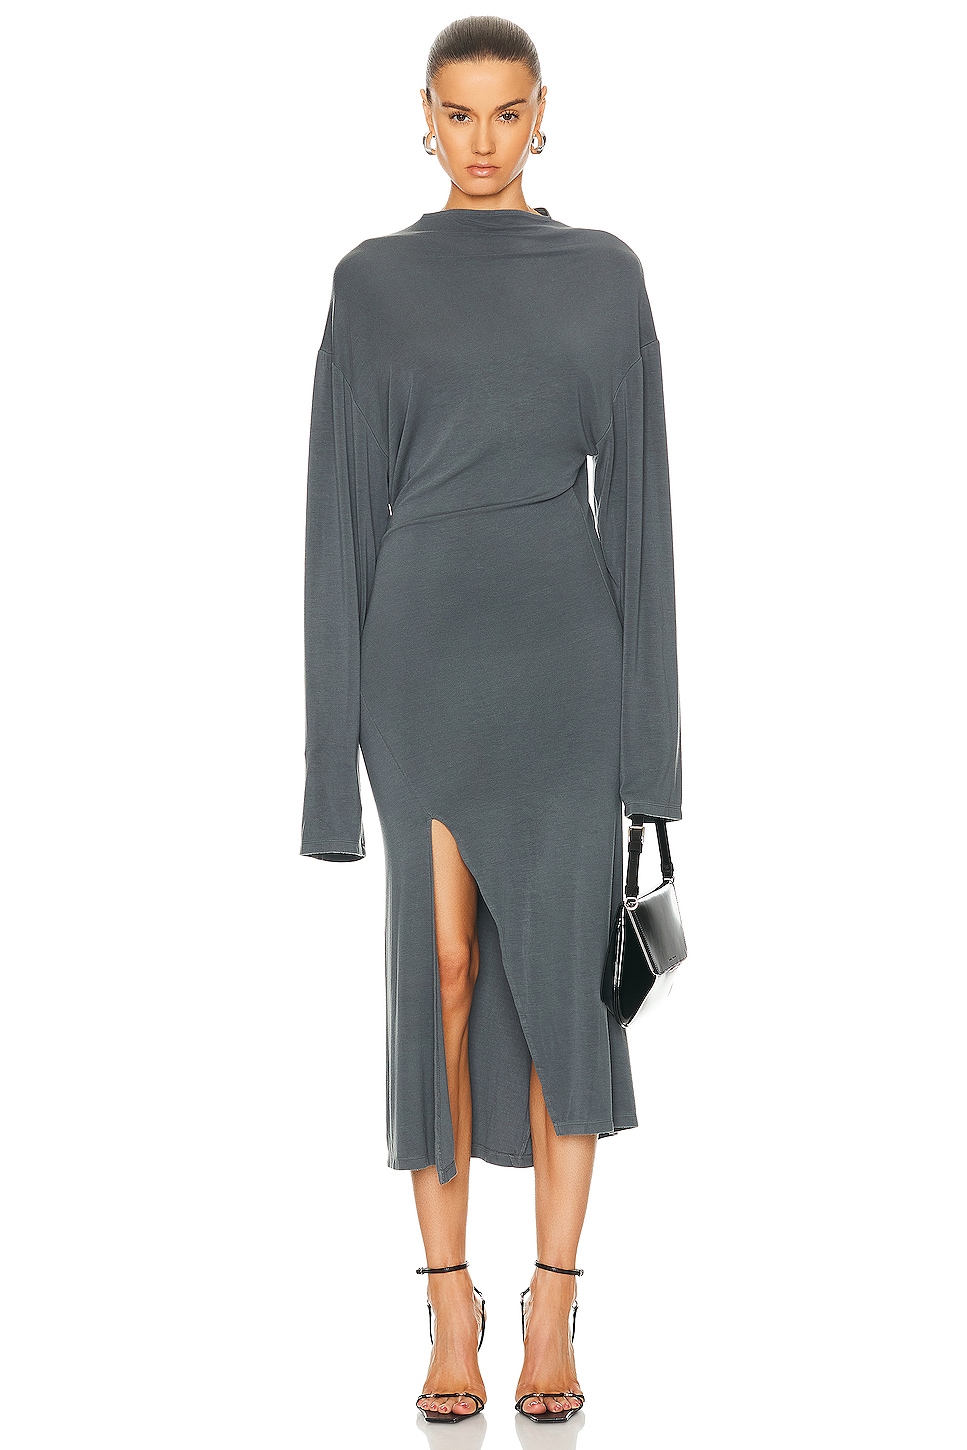 Jade Cropper Long Sleeve Oversized Slit Dress in Dye Grey | FWRD